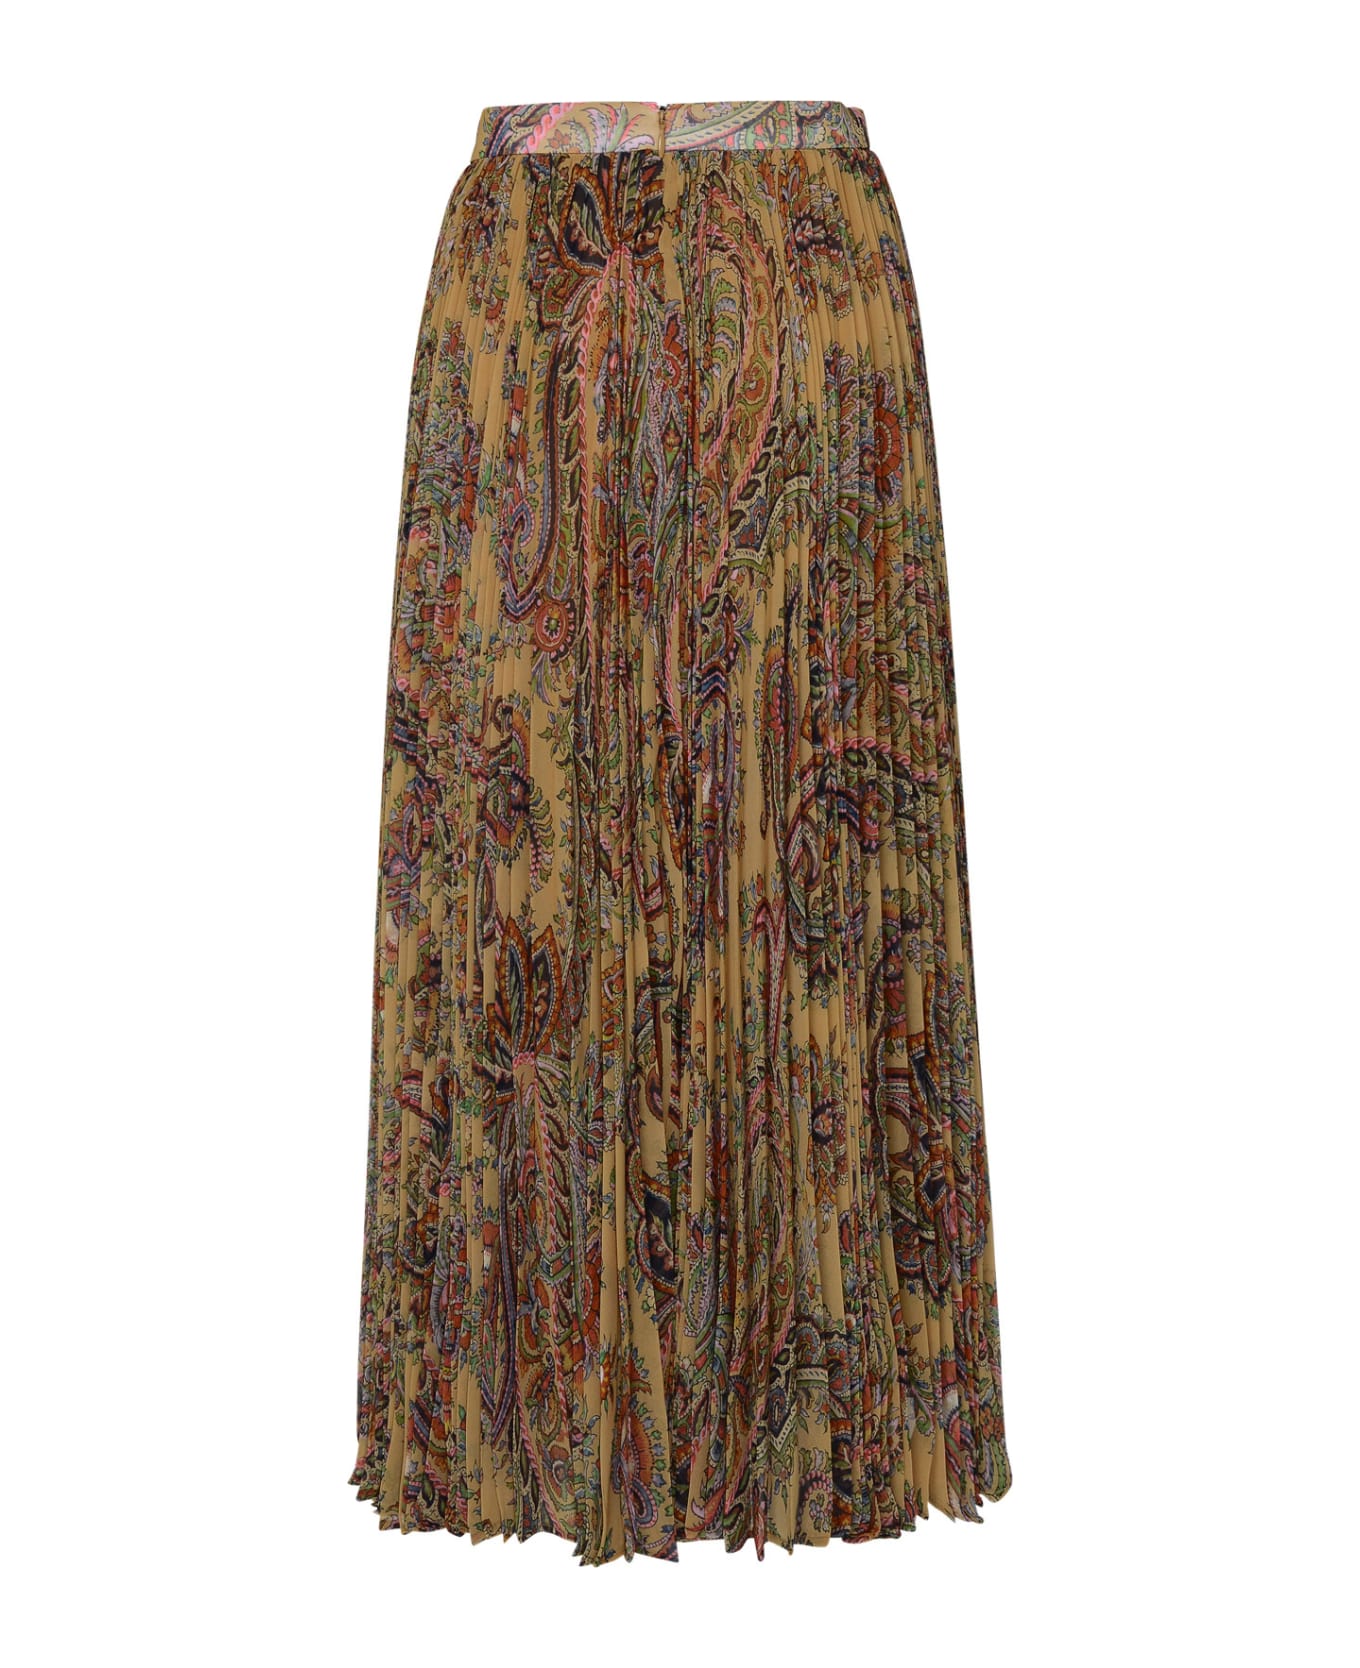 Etro Multicolored Georgette Skirt - Multicolor